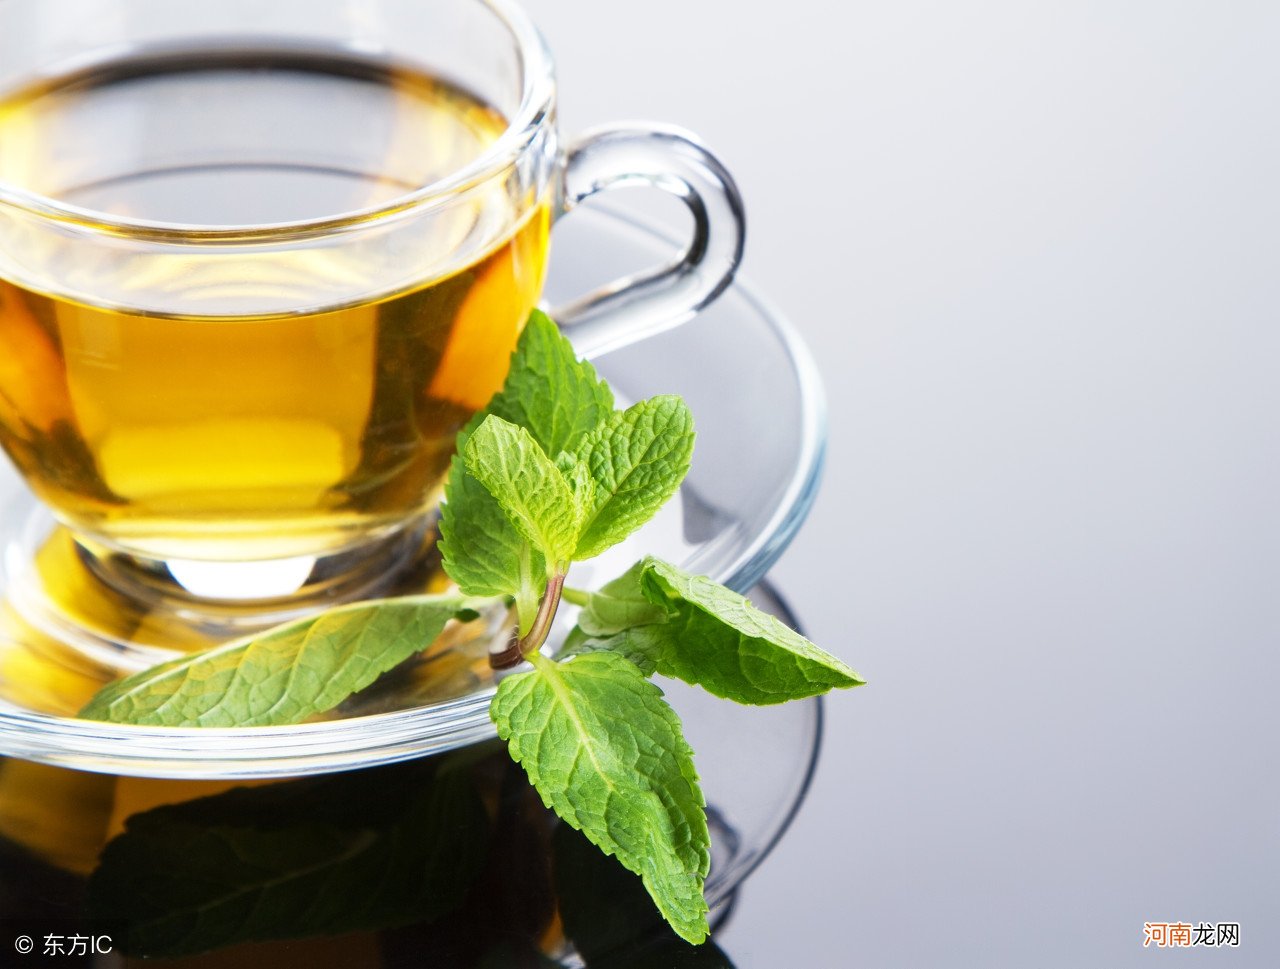 夏天最好的饮料就是绿茶 绿茶可以降火吗